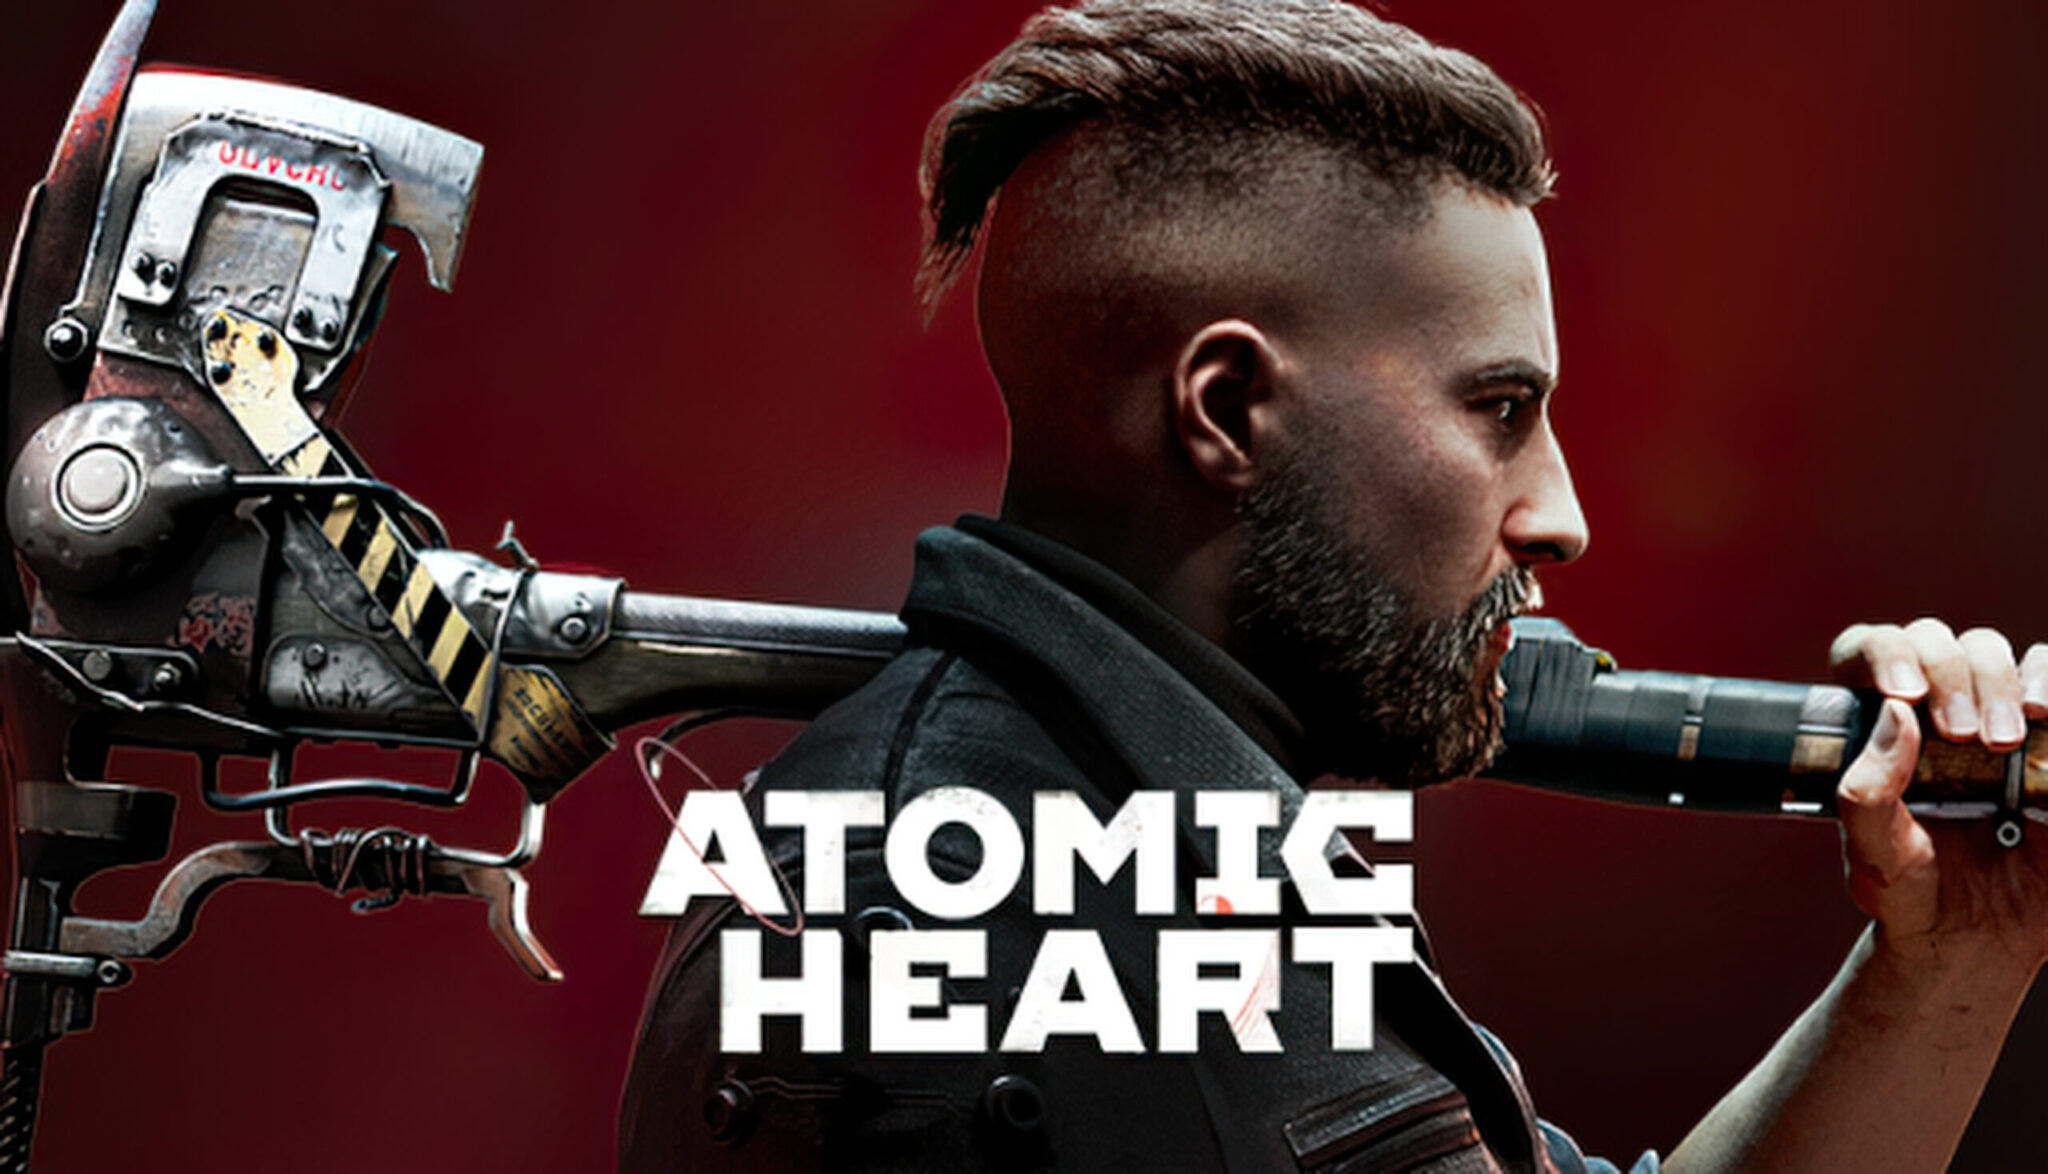 atomic-heart-tem-vazamento-de-v-deo-de-gameplay-de-14-minutos-ps-verso